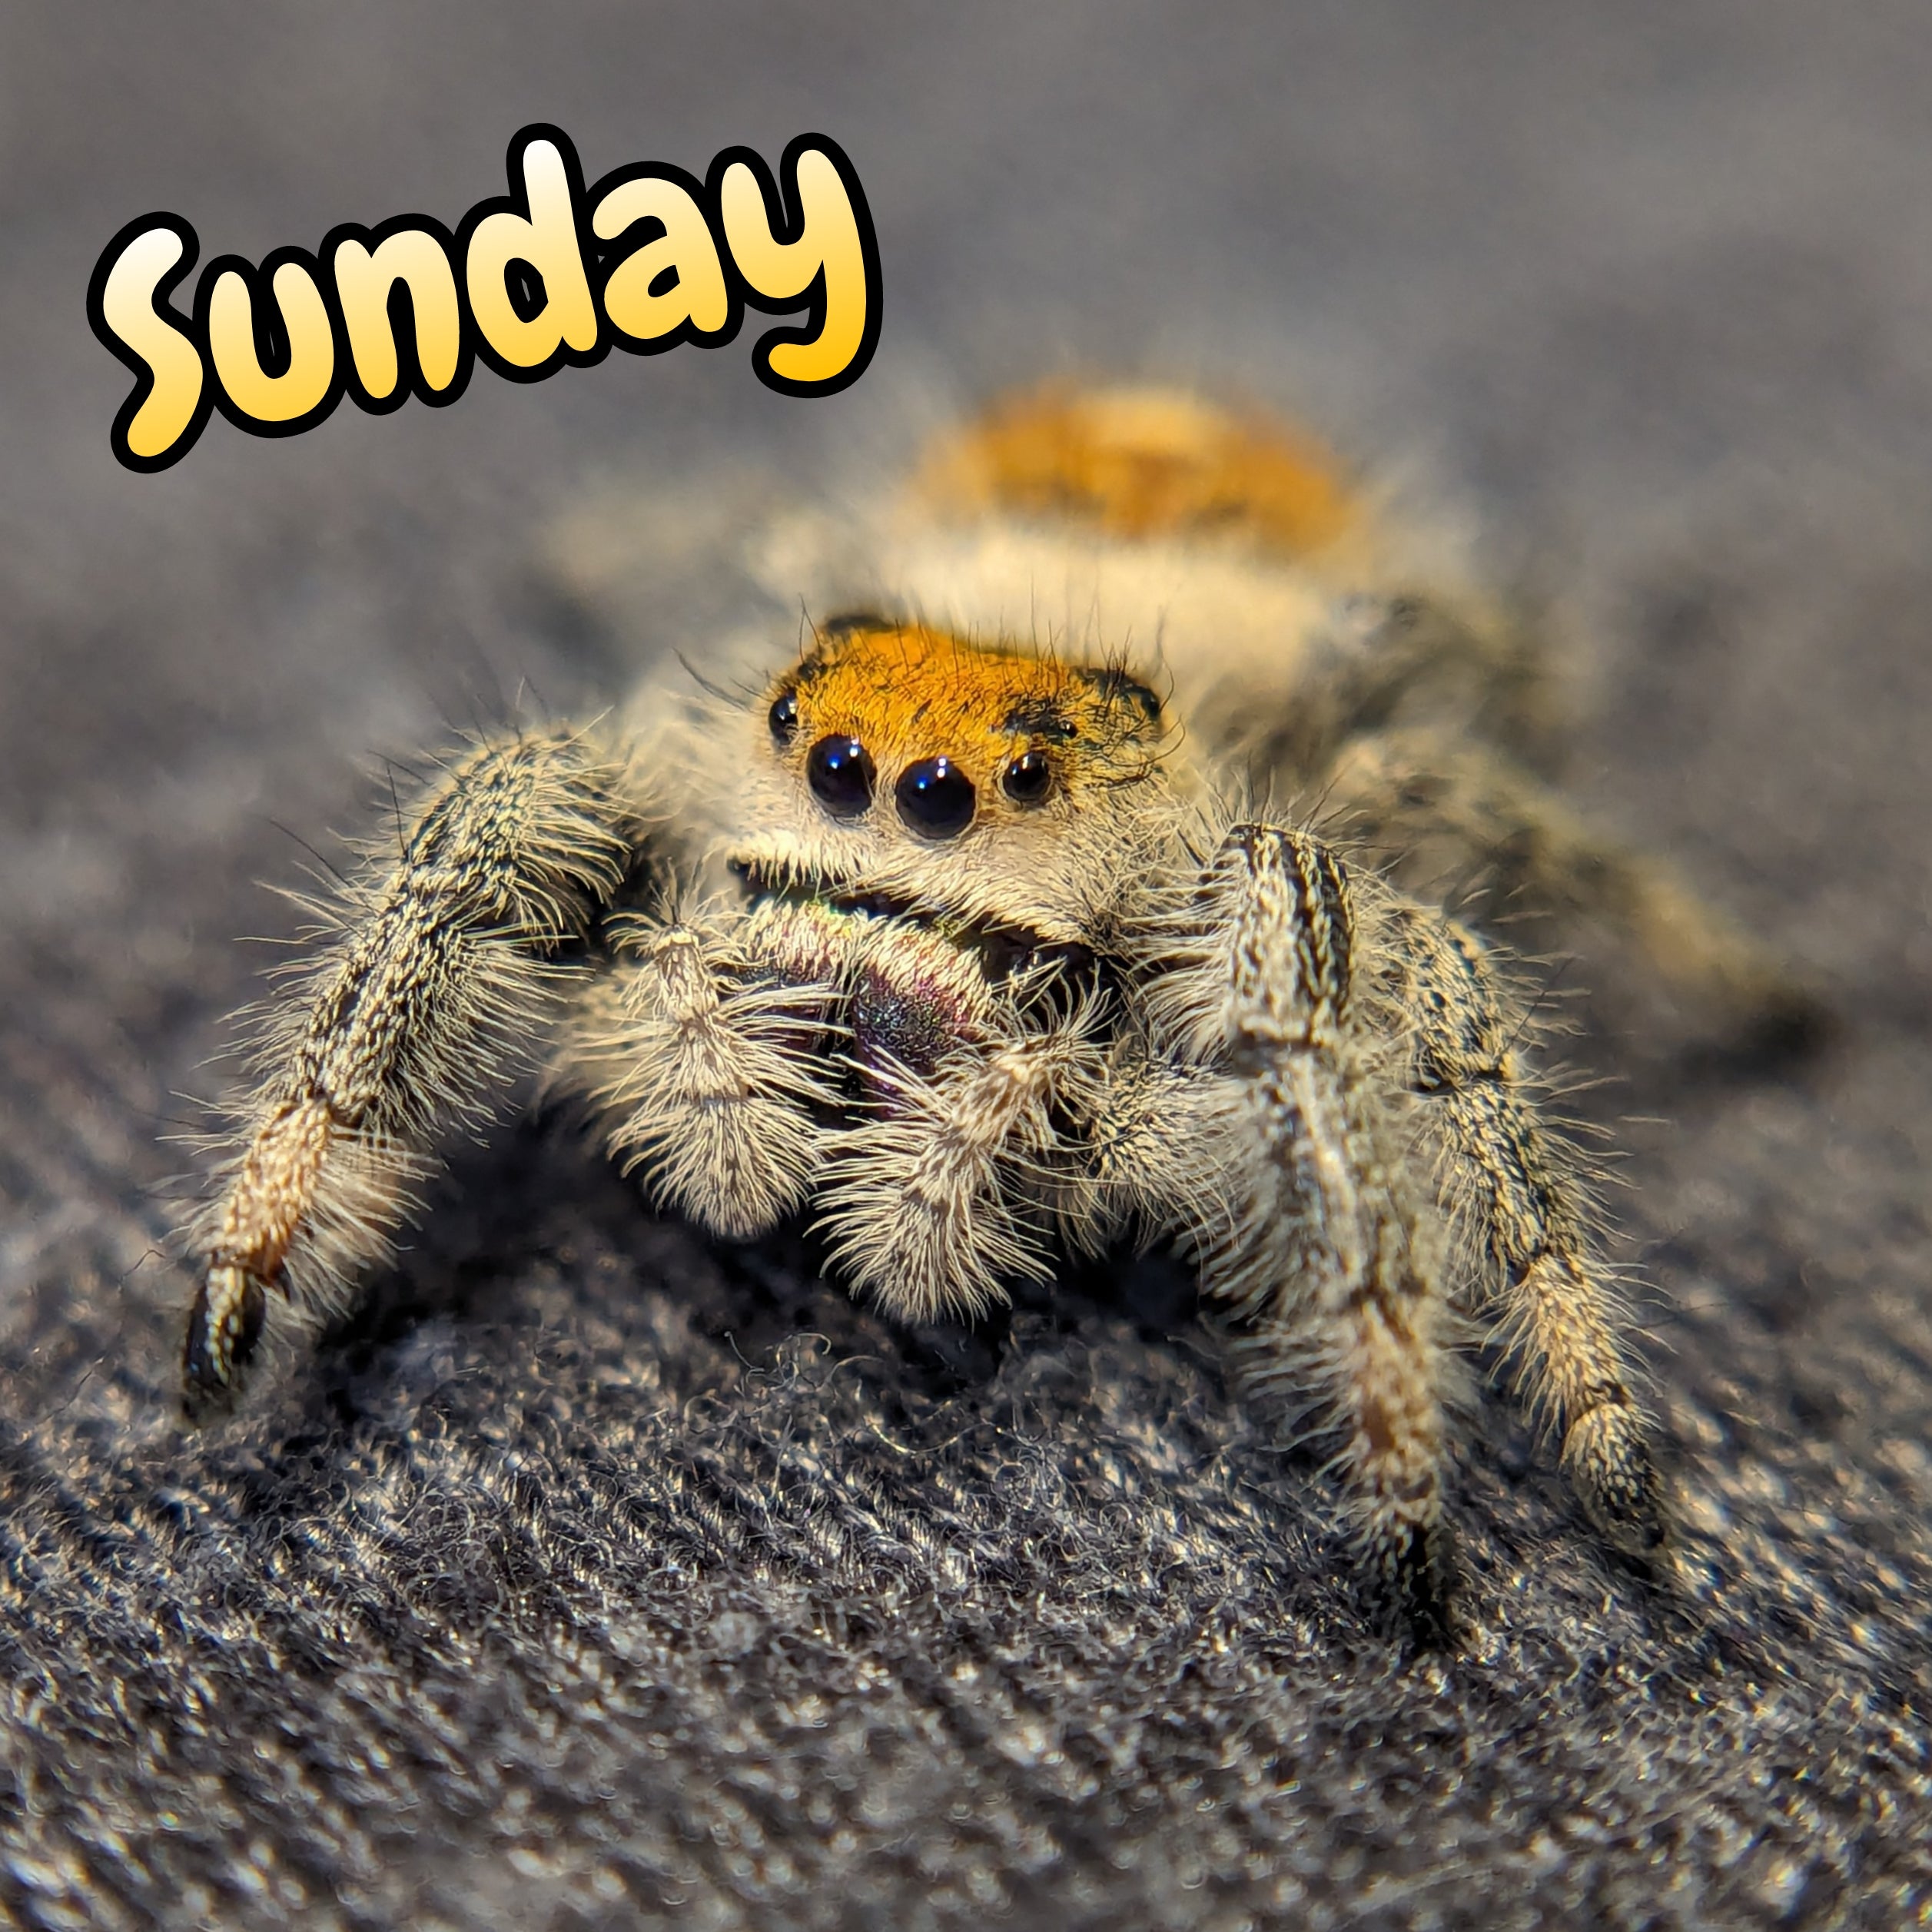 Regal Jumping Spider "Sunday"